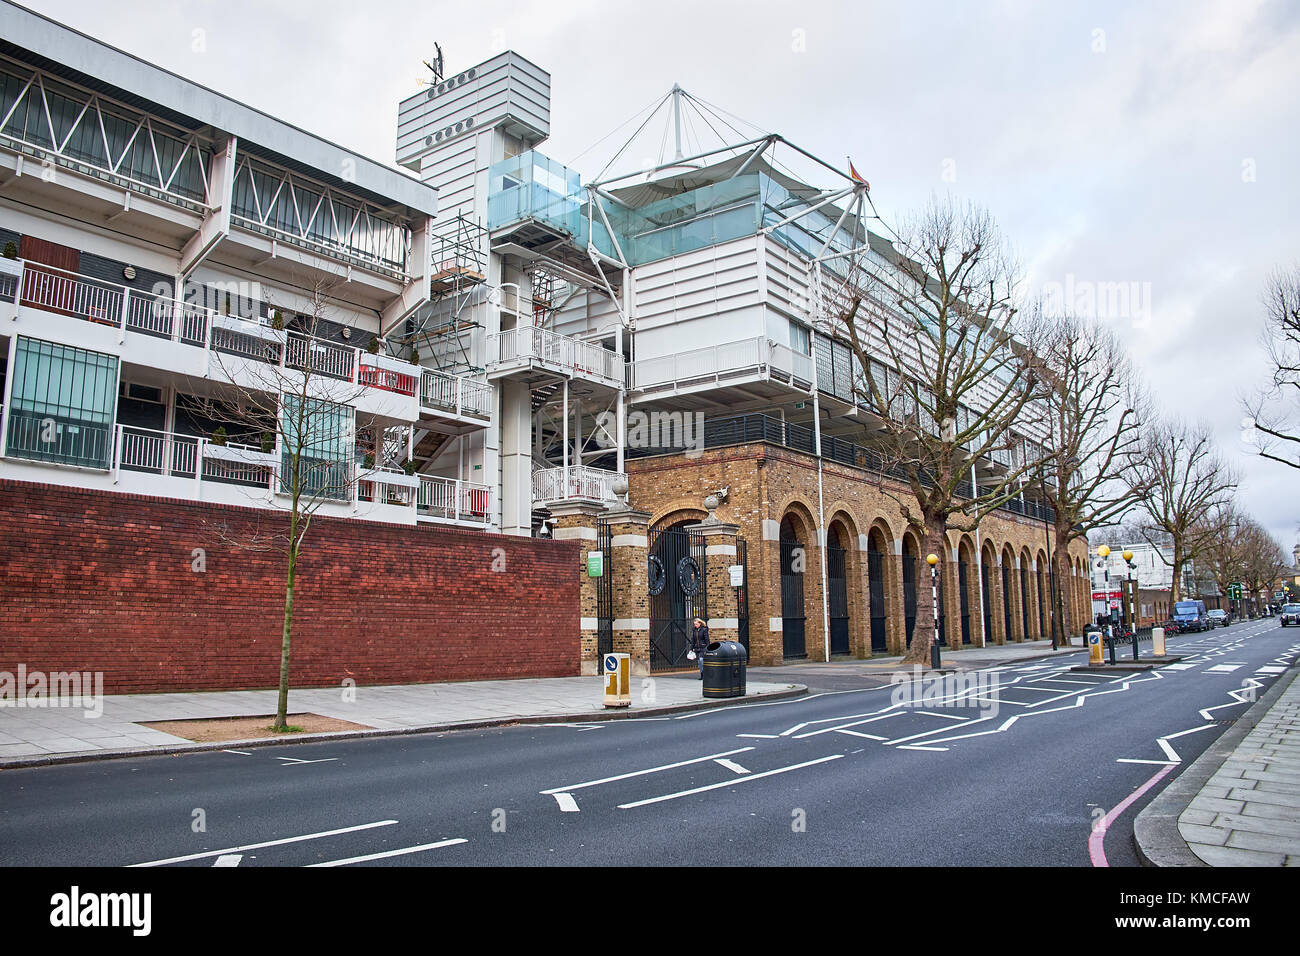 London city - 25 décembre 2016 : la façade de Lord's Cricket Ground avec une rue vide le jour de Noël Banque D'Images